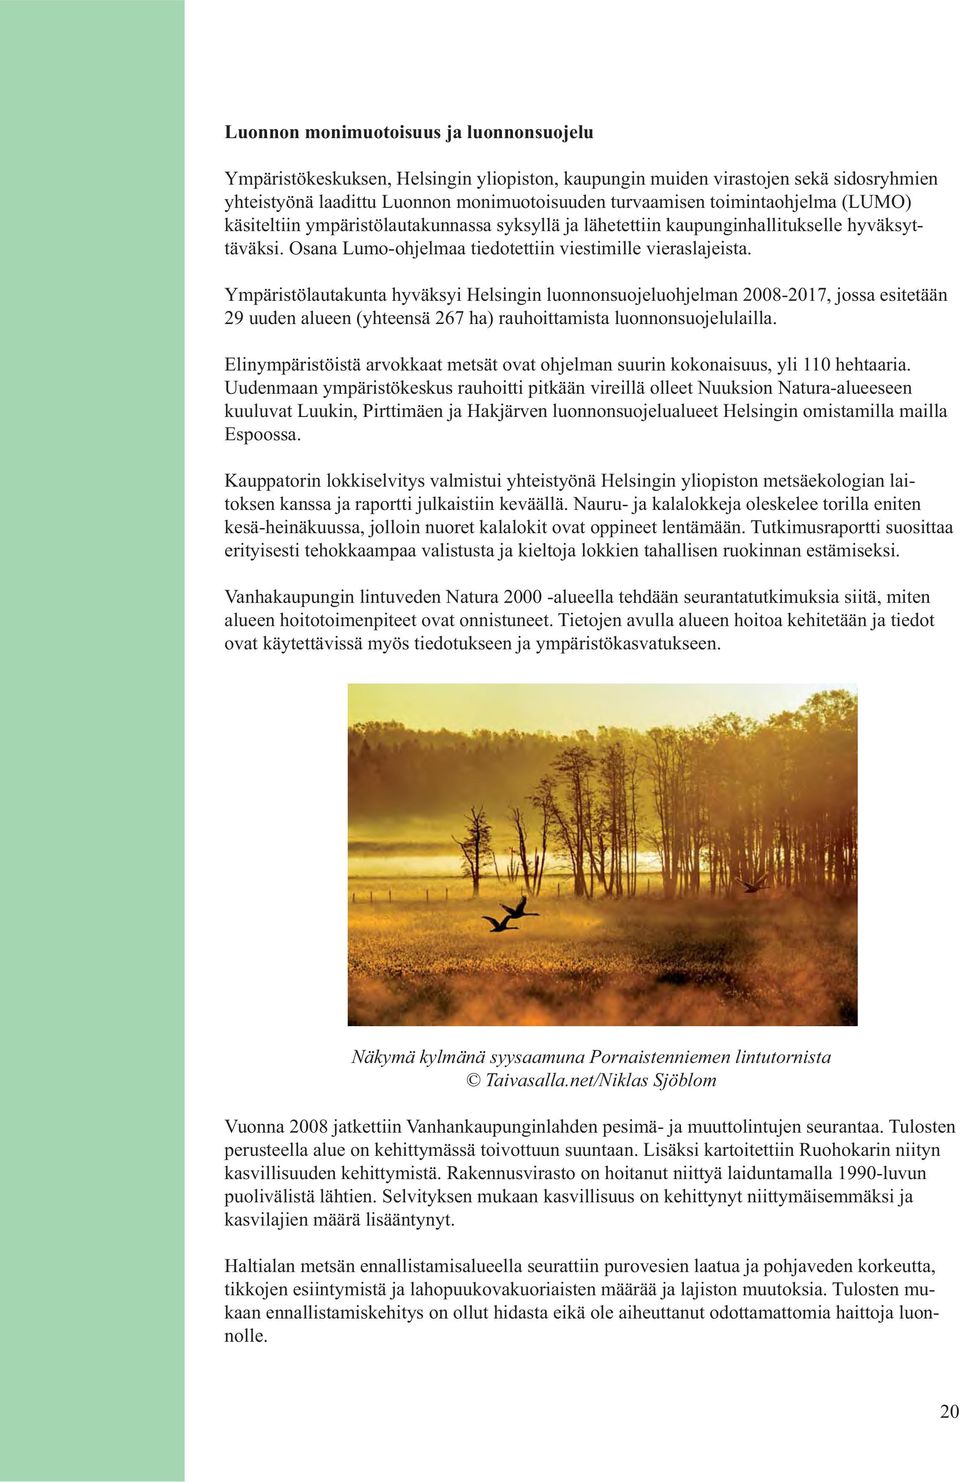 Ympäristölautakunta hyväksyi Helsingin luonnonsuojeluohjelman 2008-2017, jossa esitetään 29 uuden alueen (yhteensä 267 ha) rauhoittamista luonnonsuojelulailla.